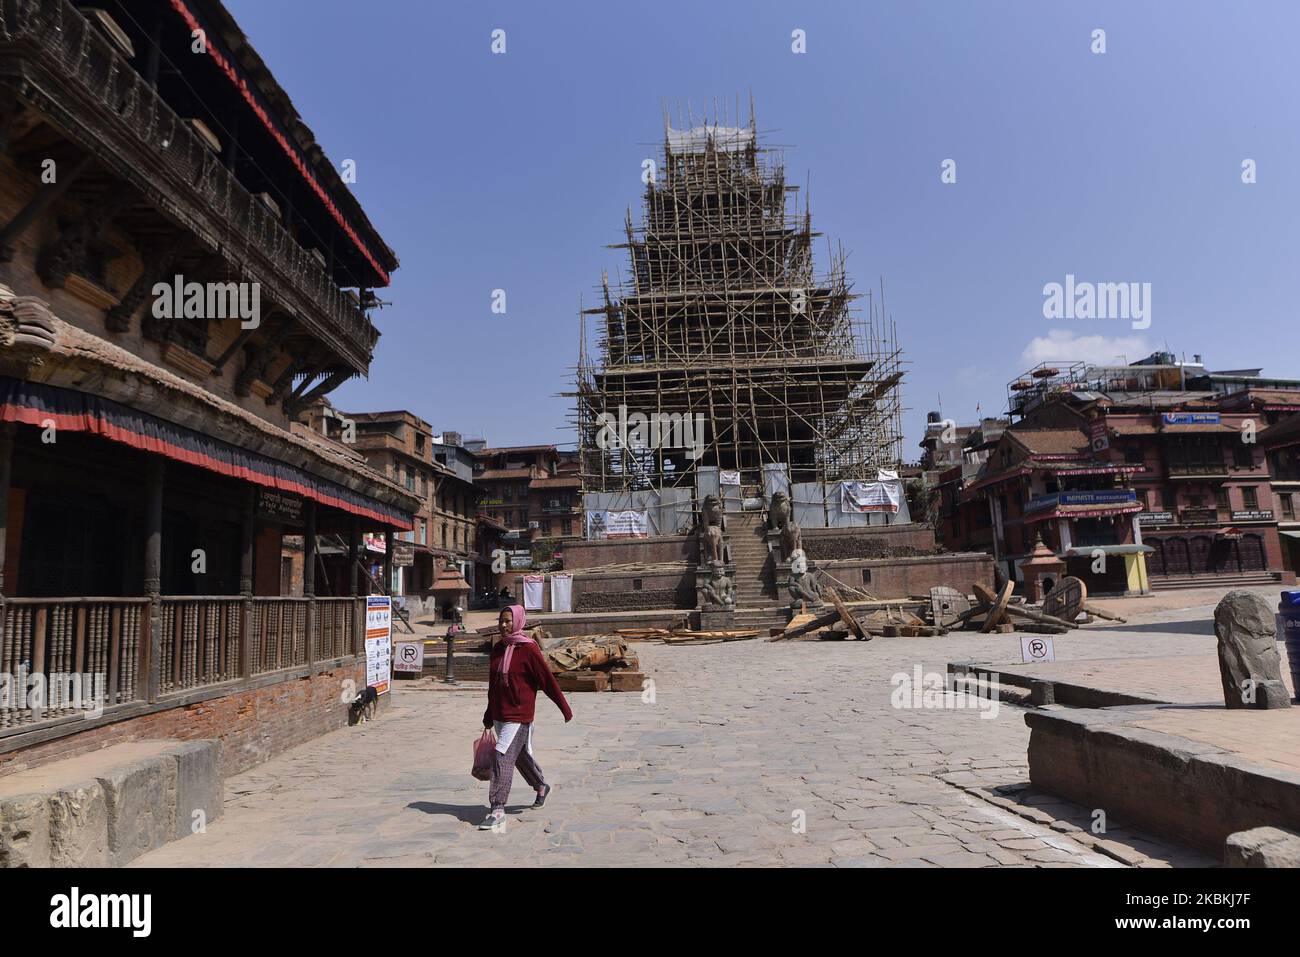 Der Bhaktapur Durbar Square, der zum UNESCO-Weltkulturerbe erklärt wurde, war am dritten Tag einer landesweiten 7-tägigen Sperre wegen Bedenken über die Ausbreitung des Corona-Virus (COVID-19) in Bhaktapur, Nepal, am Donnerstag, den 26. März 2020 leer. (Foto von Narayan Maharjan/NurPhoto) Stockfoto